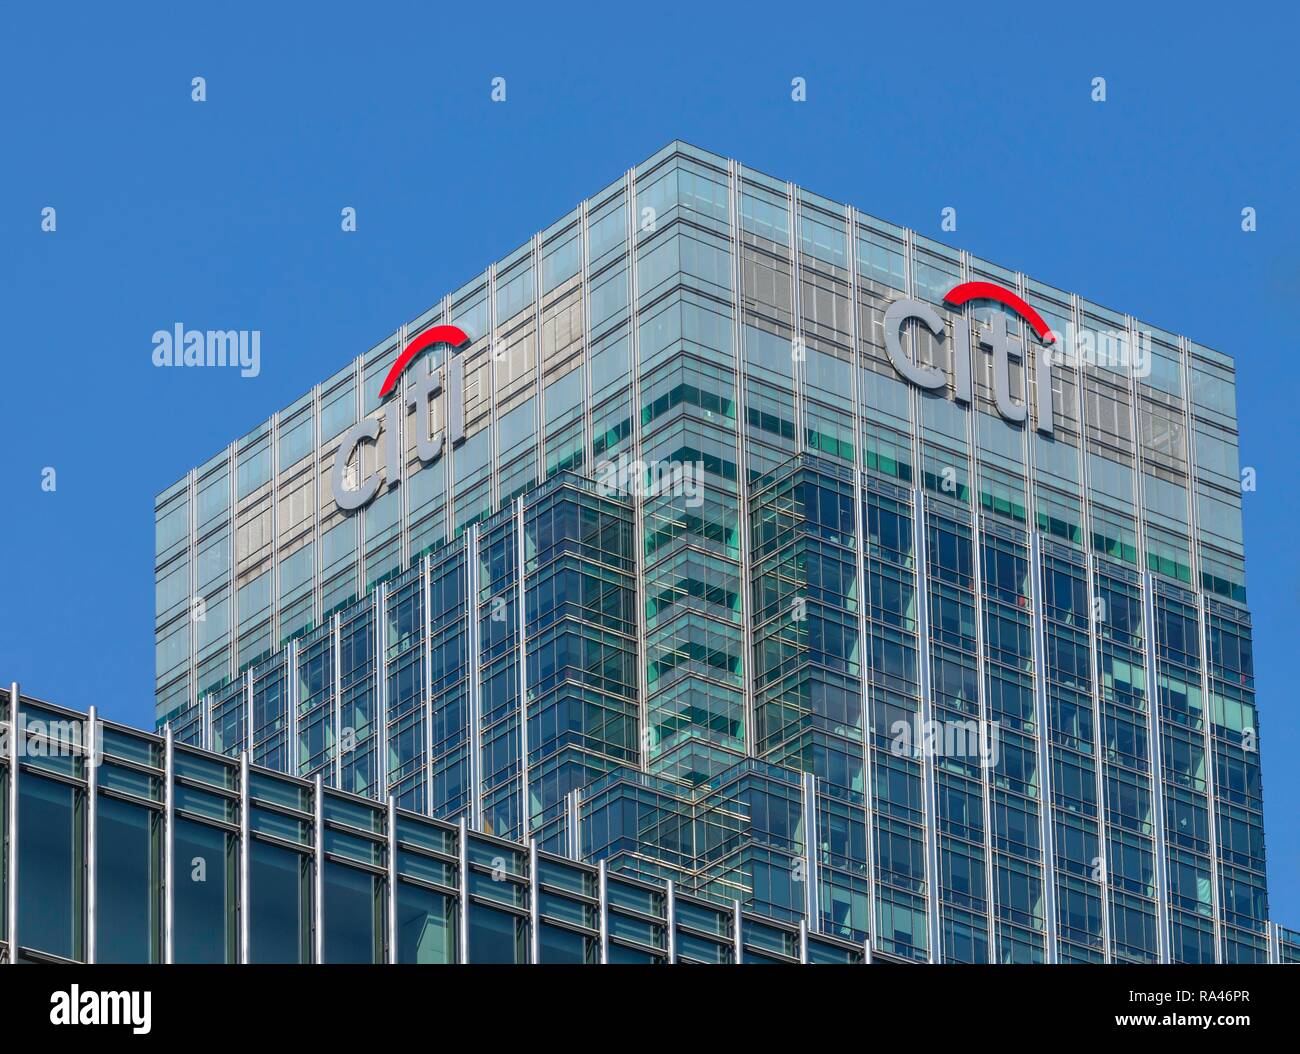 Au siège de la Banque Citi, Citigroup Center district financier et bancaire Canary Wharf, London, United Kingdom Banque D'Images